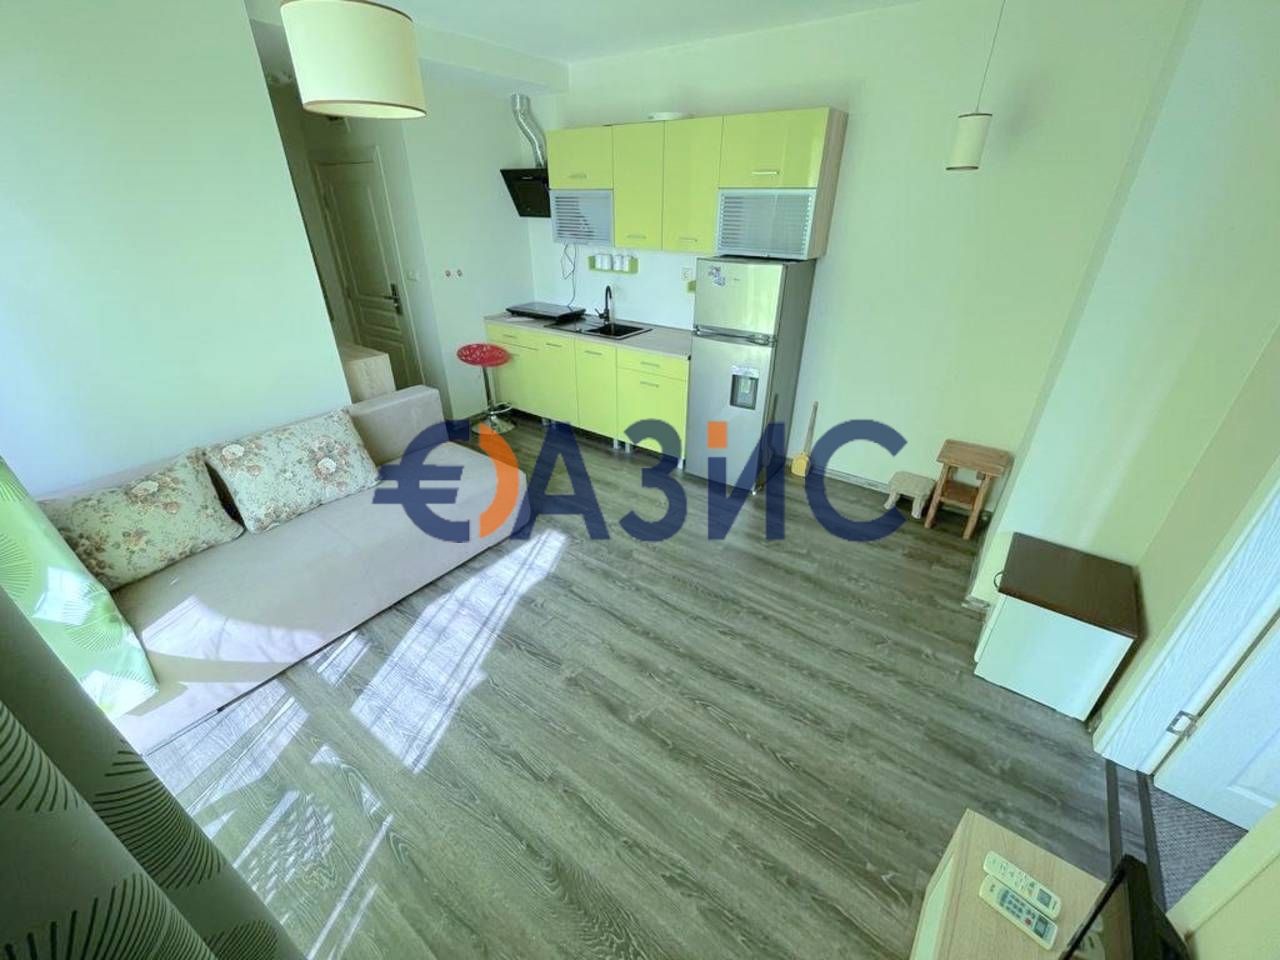 Apartment at Sunny Beach, Bulgaria, 52 sq.m - picture 1